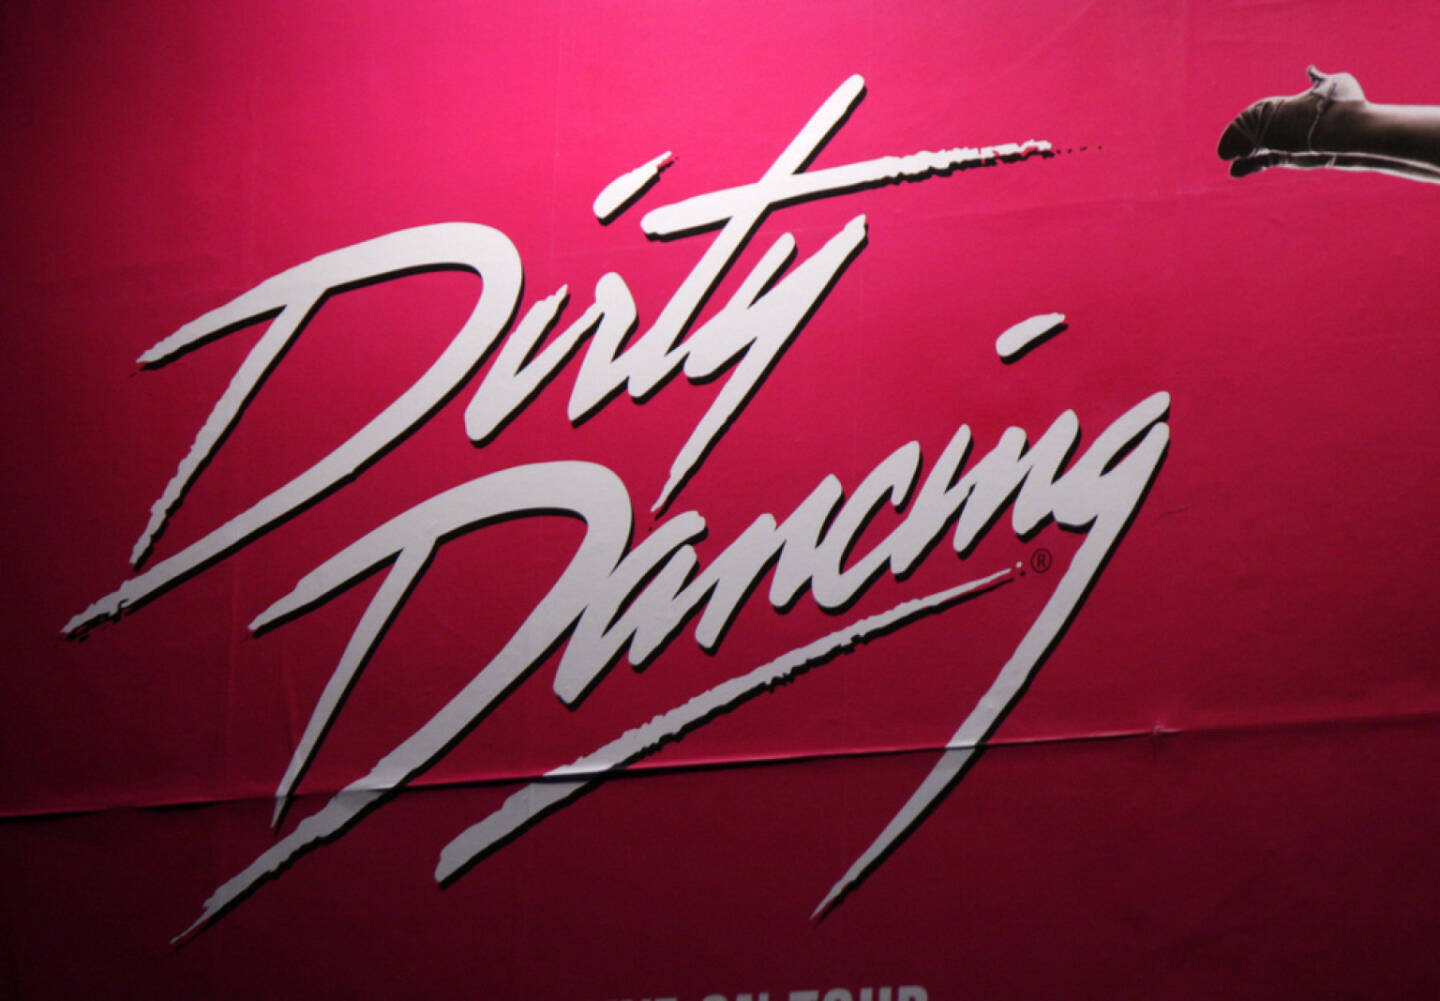 Dirty Dancing, Tanz, tanzen, Kino, <a href=http://www.shutterstock.com/gallery-320989p1.html?cr=00&pl=edit-00>360b</a> / <a href=http://www.shutterstock.com/editorial?cr=00&pl=edit-00>Shutterstock.com</a>, 360b / Shutterstock.com